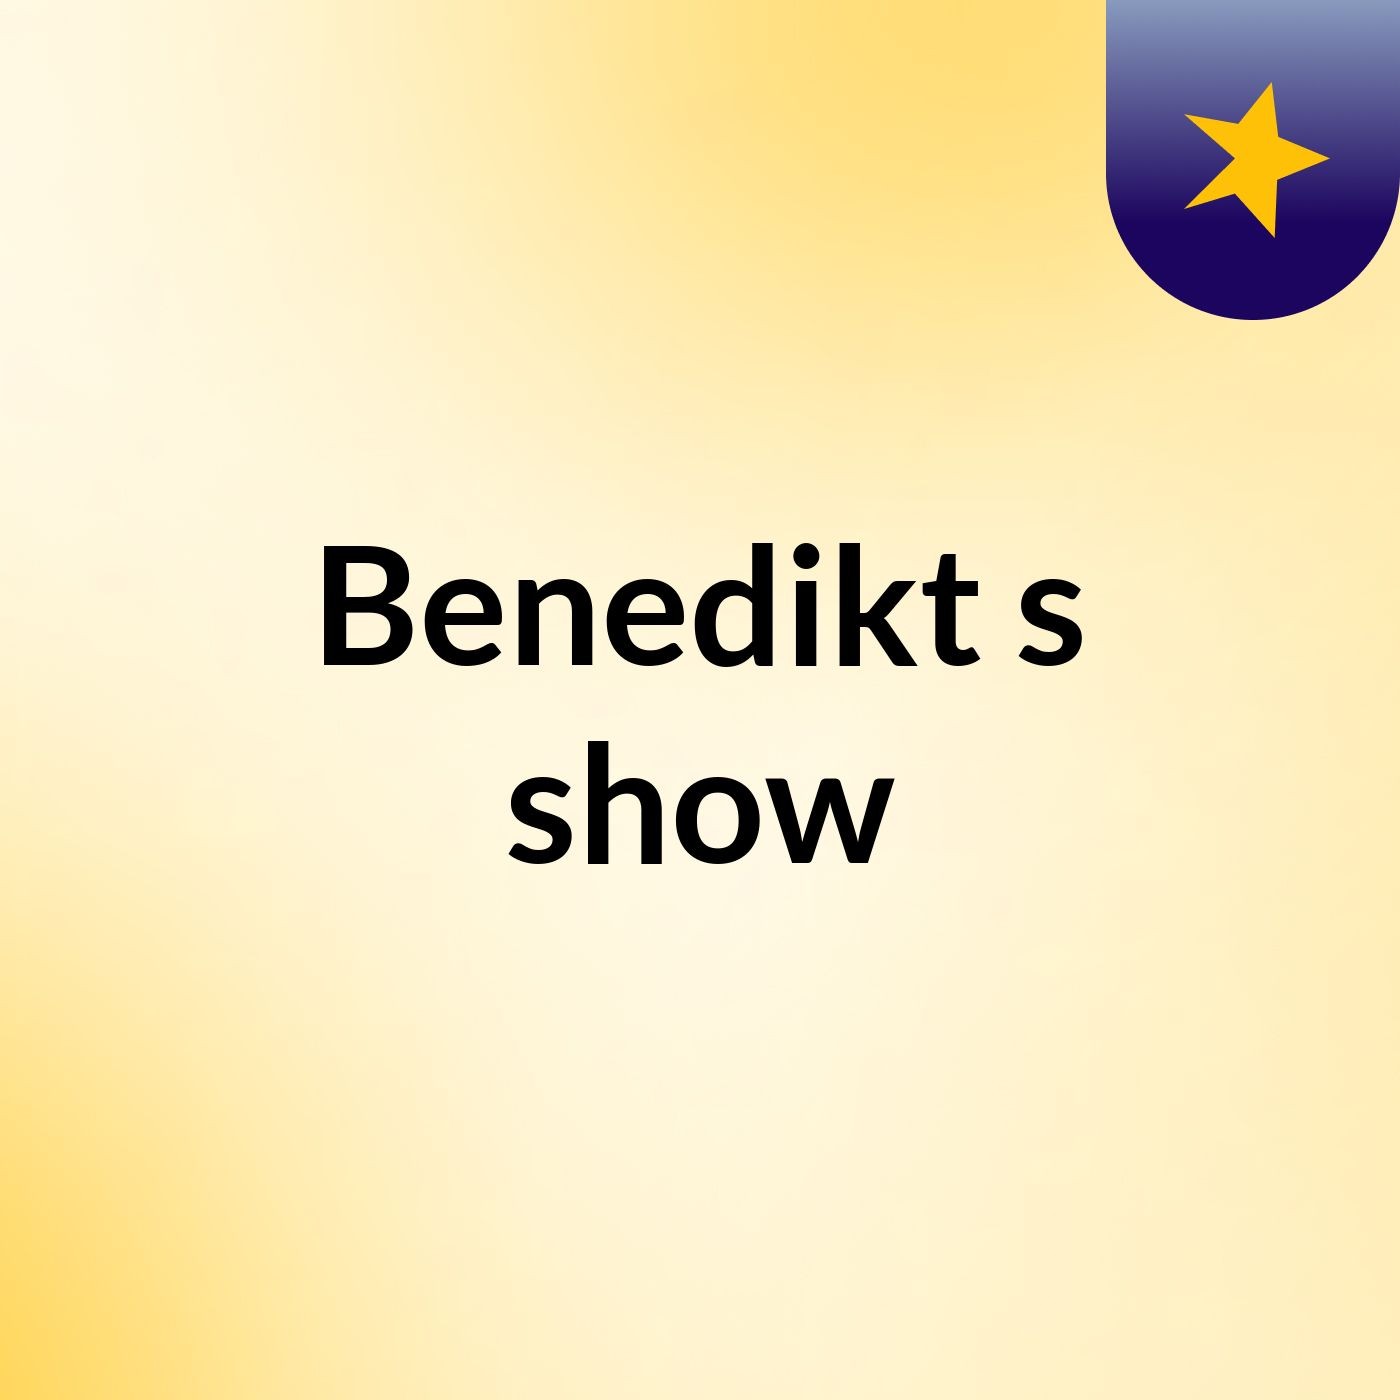 Benedikt's show